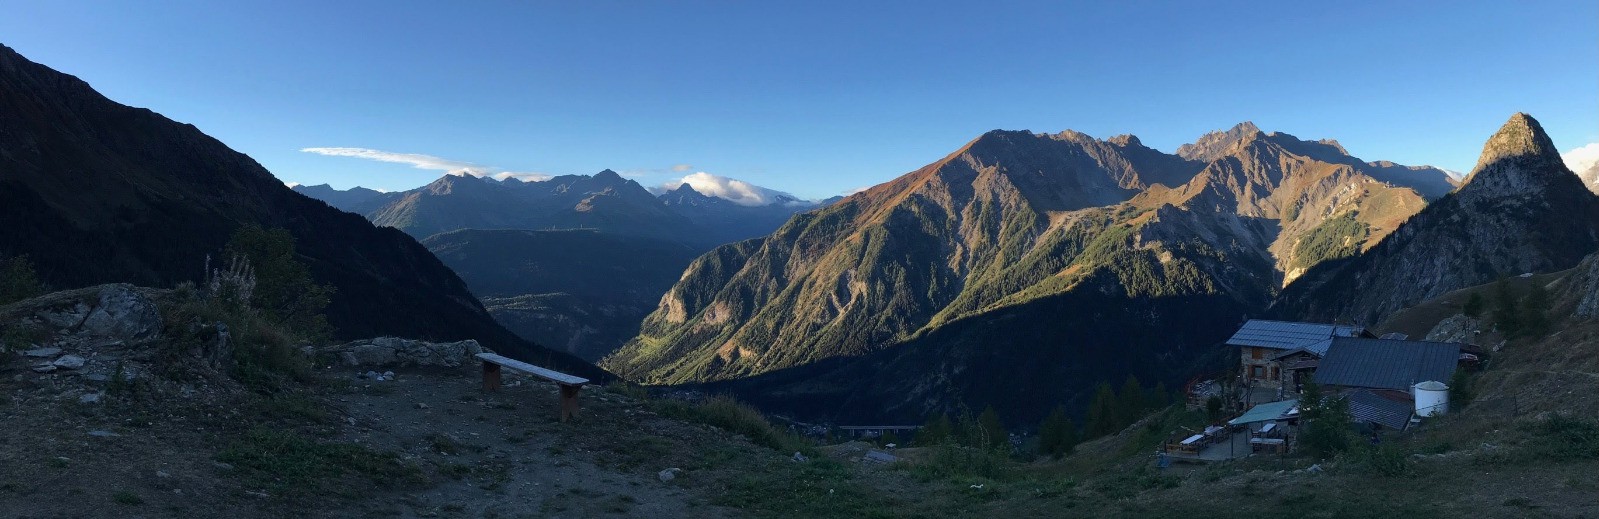 Jour 3 : réveil au refuge Bertone, vue sur le Val d'Aoste